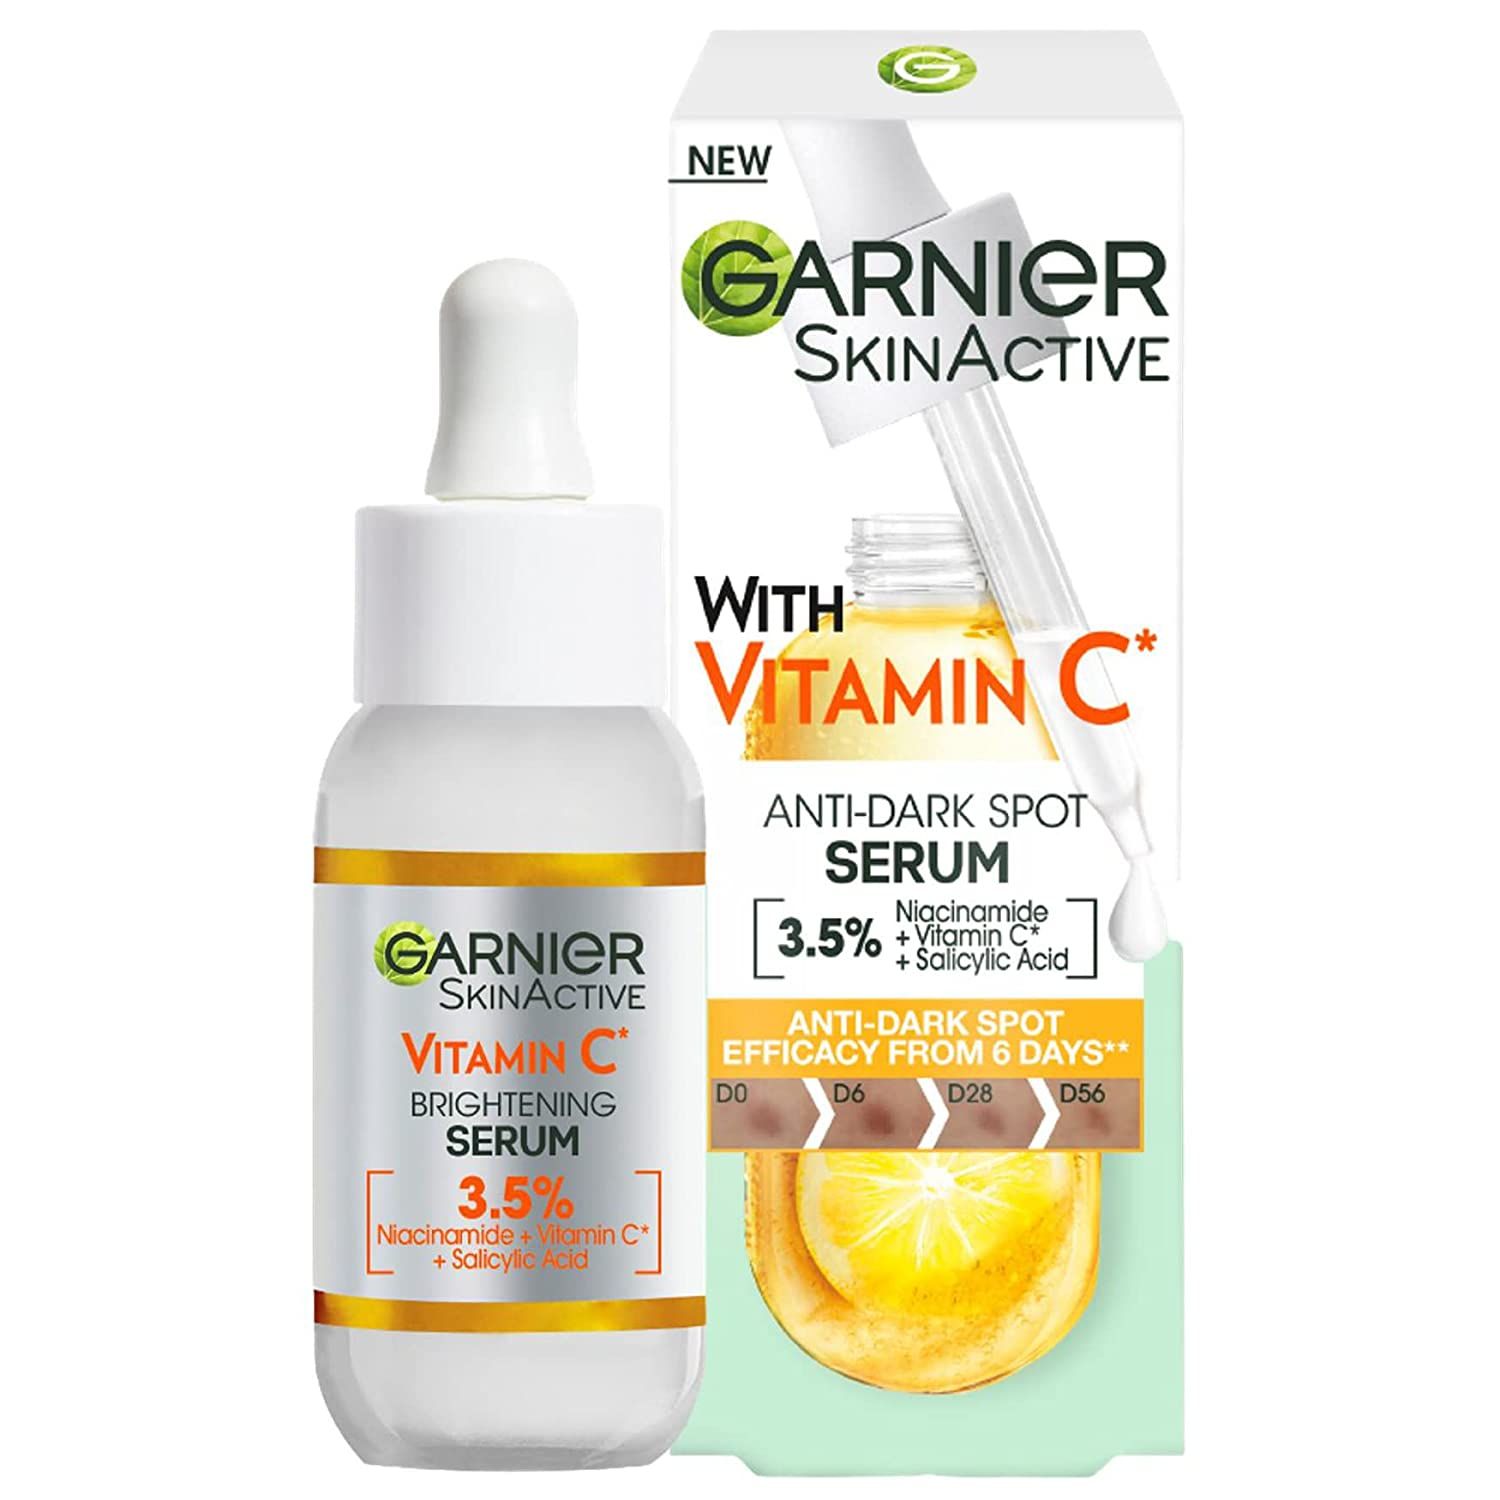 Garnier Vitamin für Glow-Booster, dunkle C Serum Gesicht, & für Pickel Flecke Serum das SHOP APOTHEKE Aufhellendes - 1 St